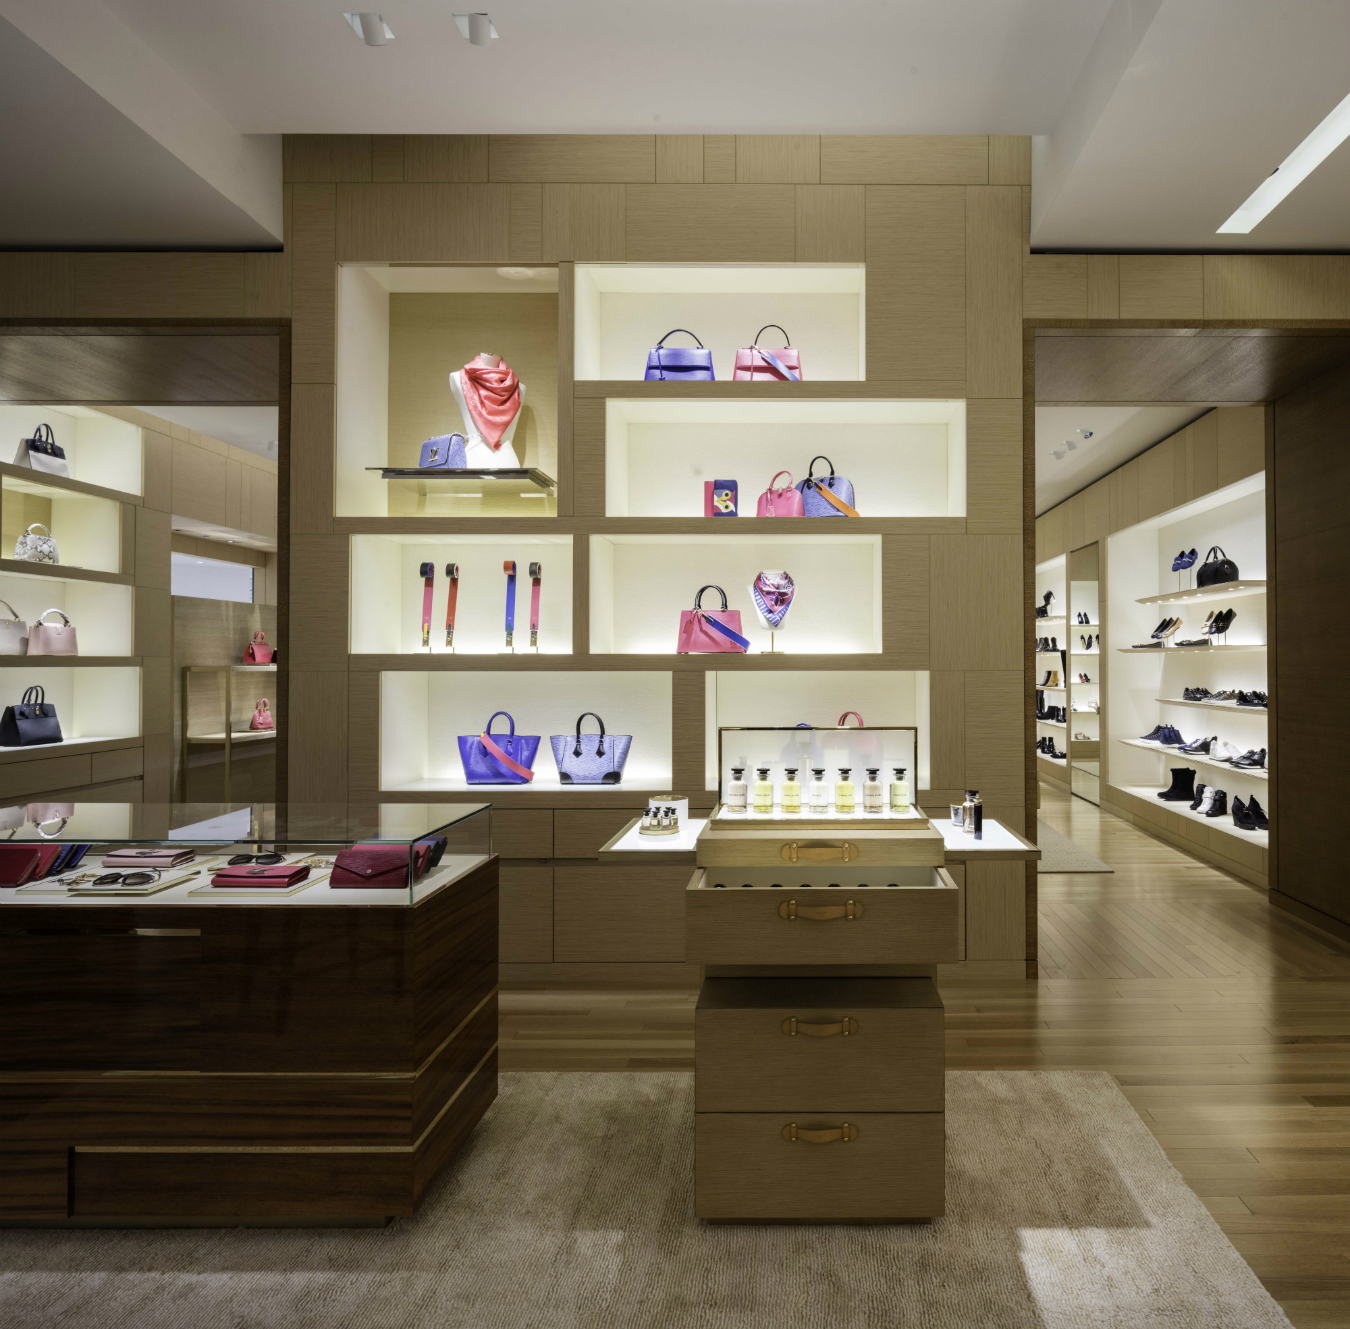 Louis Vuitton Holt Renfrew Vancouver store Canada